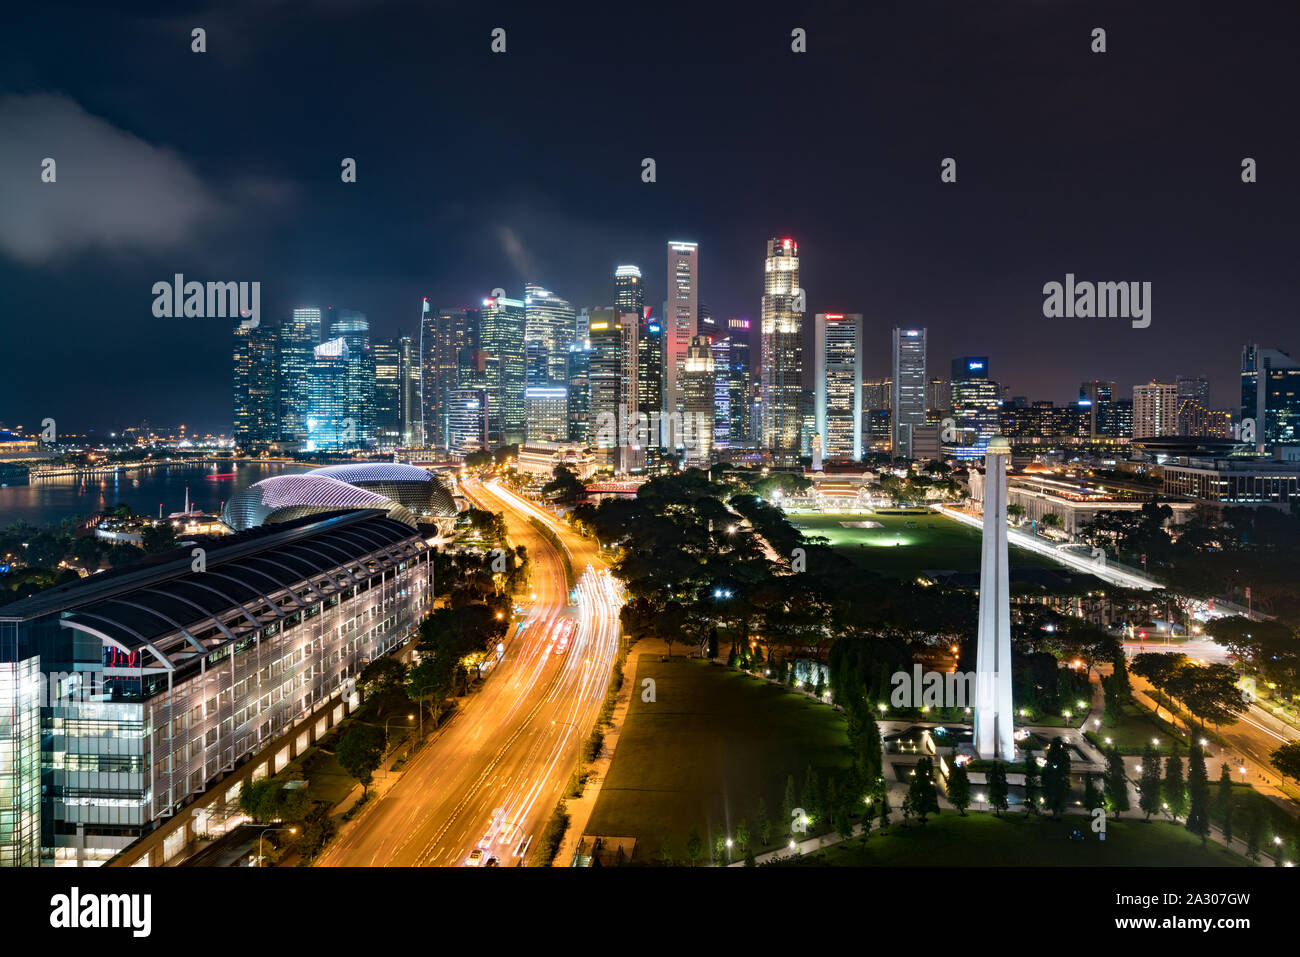 Panorama du quartier des affaires de Singapour et skyline skyscraper avec War Memorial Park de nuit à Marina Bay, Singapour. Asie Banque D'Images